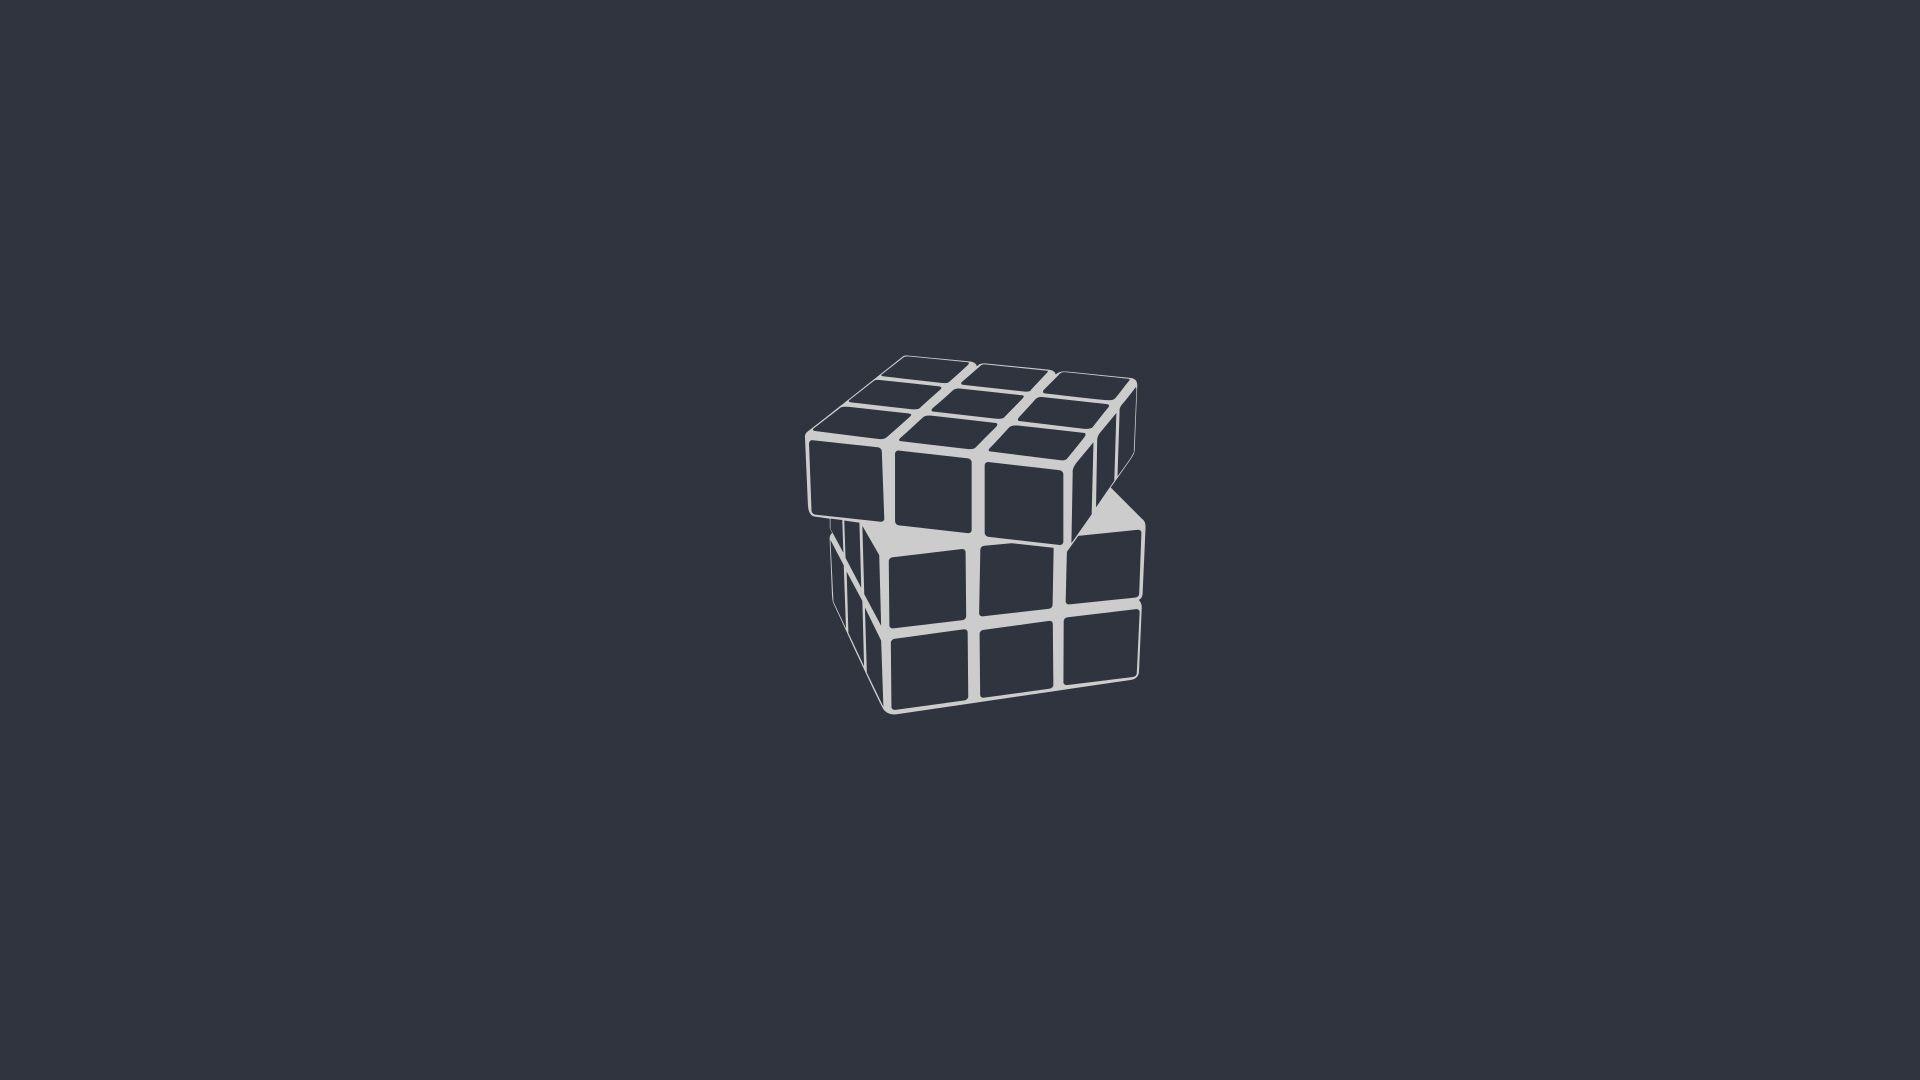 Rubiks Cube Minimalism, Full HD Wallpaper